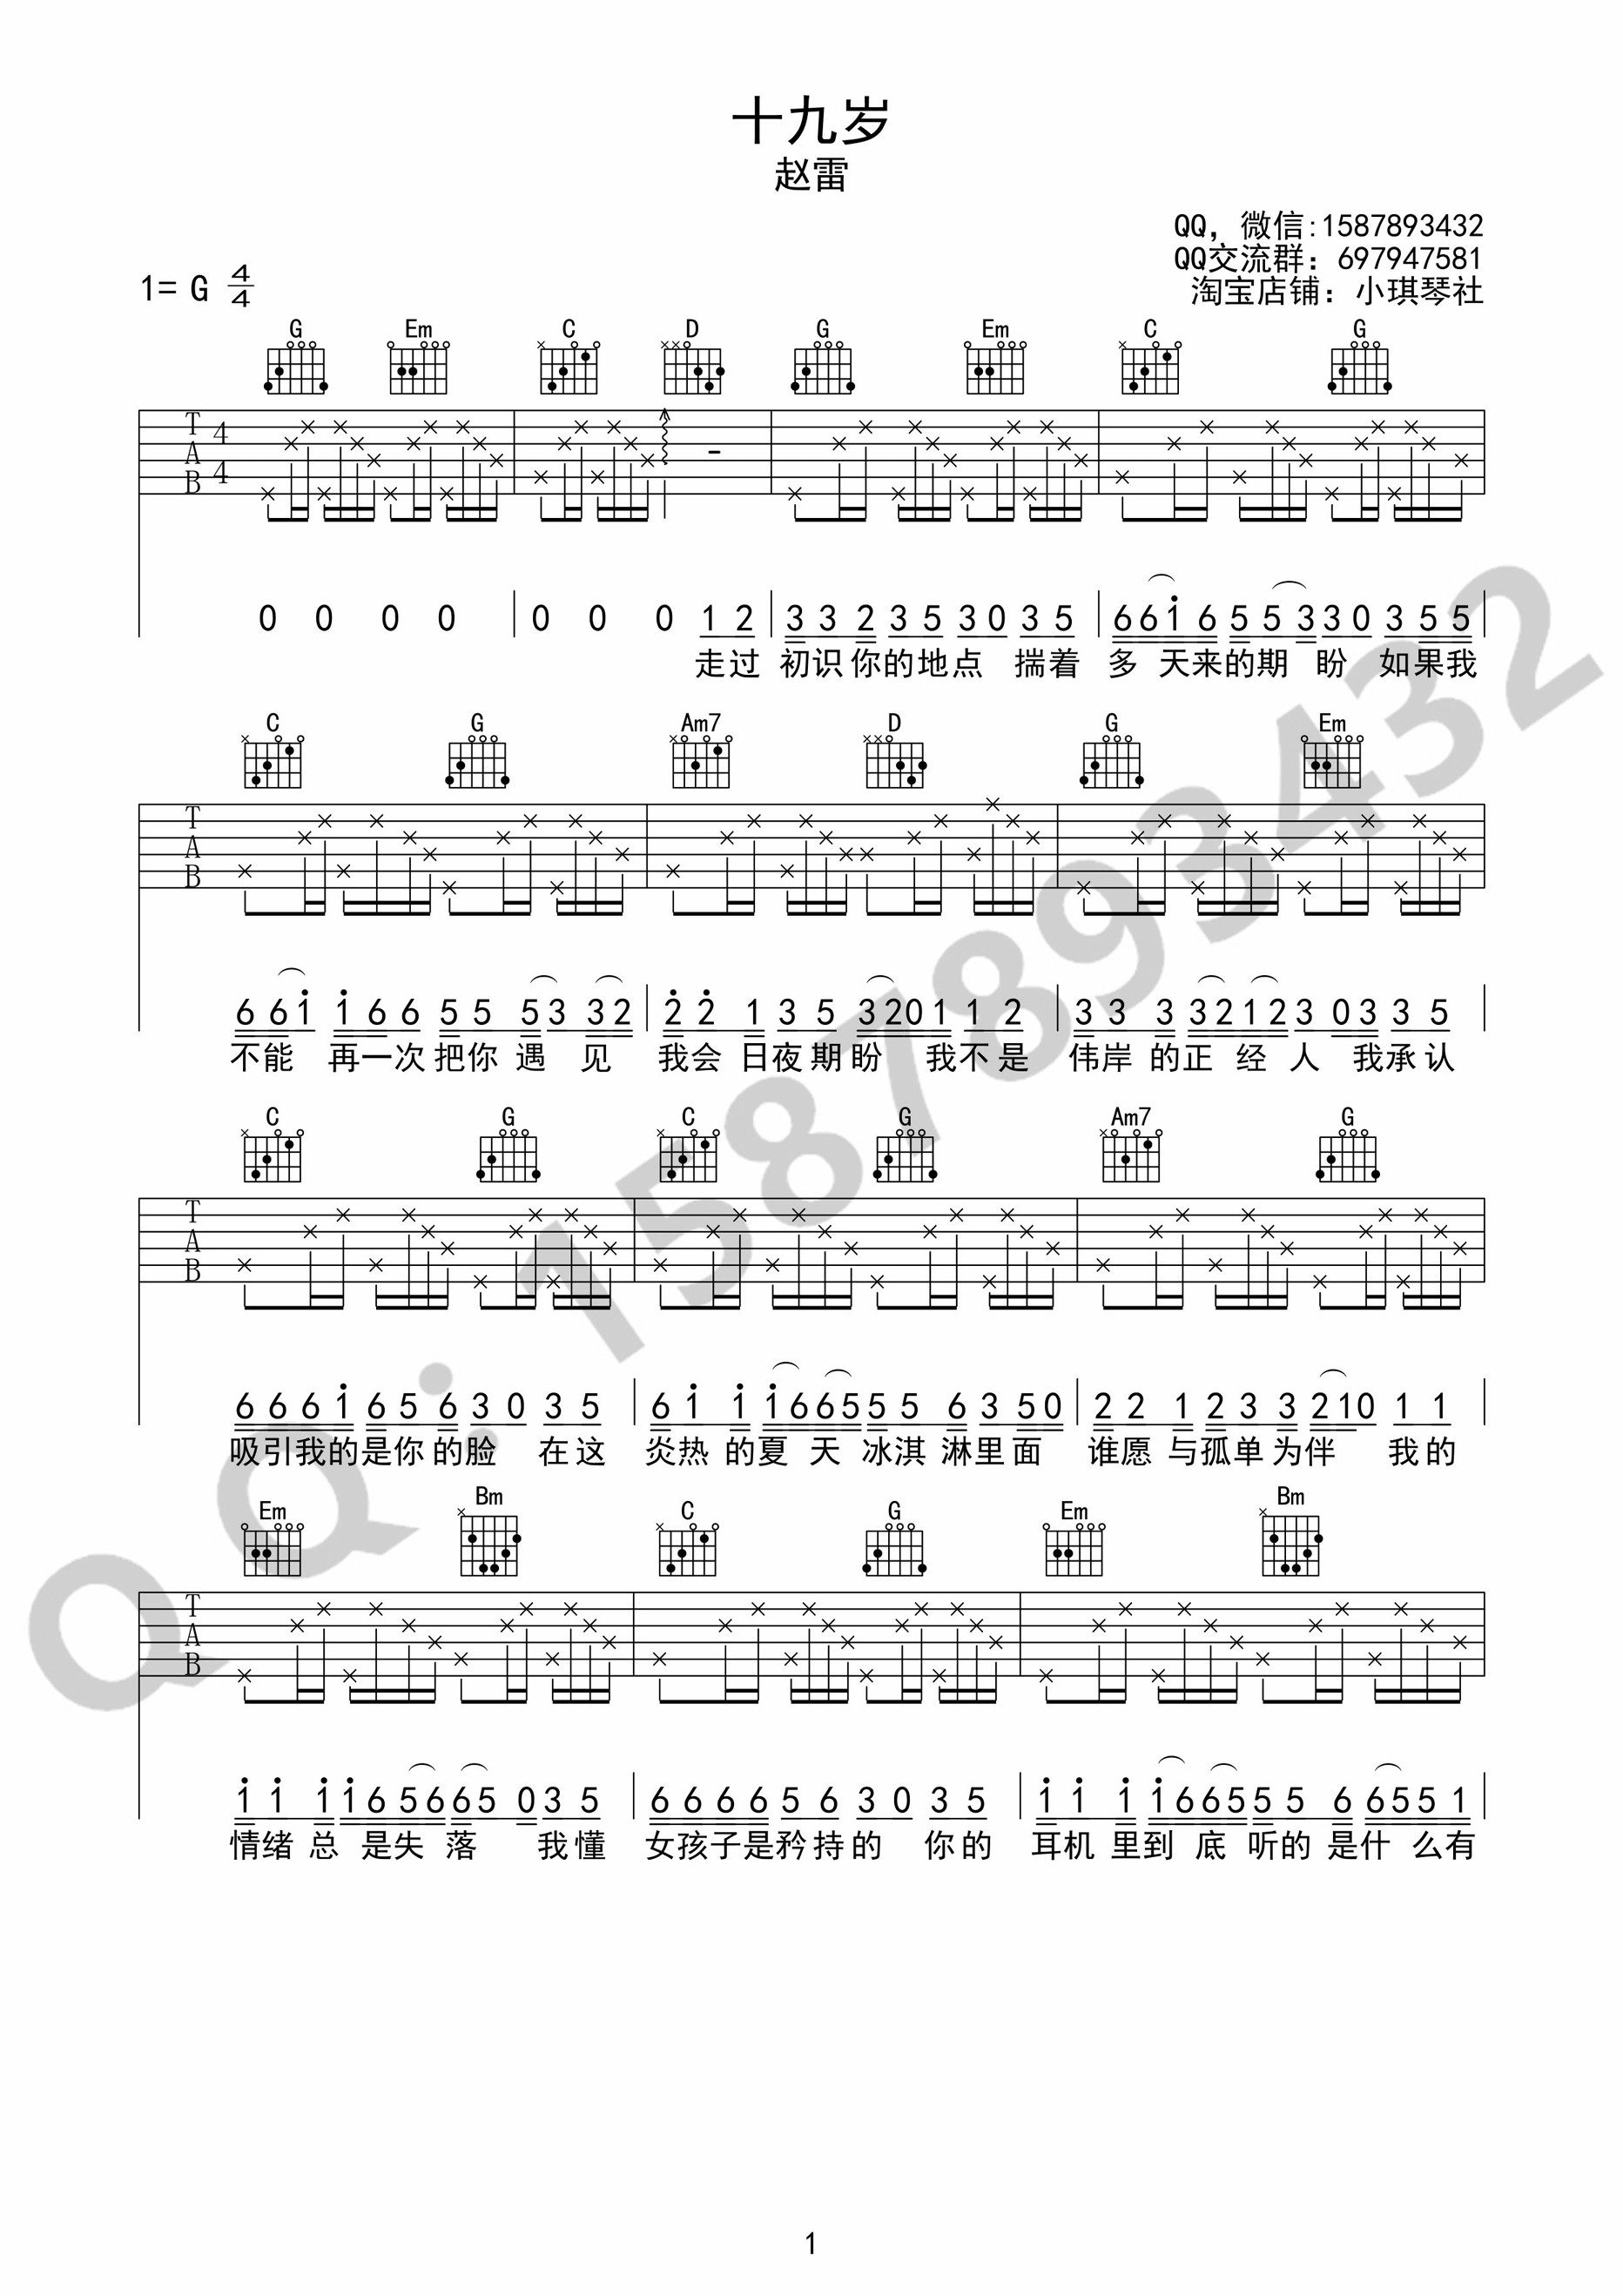 钢琴谱《十九岁》用简单数字版制谱 - 白痴弹法 - 单手双手钢琴谱 - 钢琴简谱